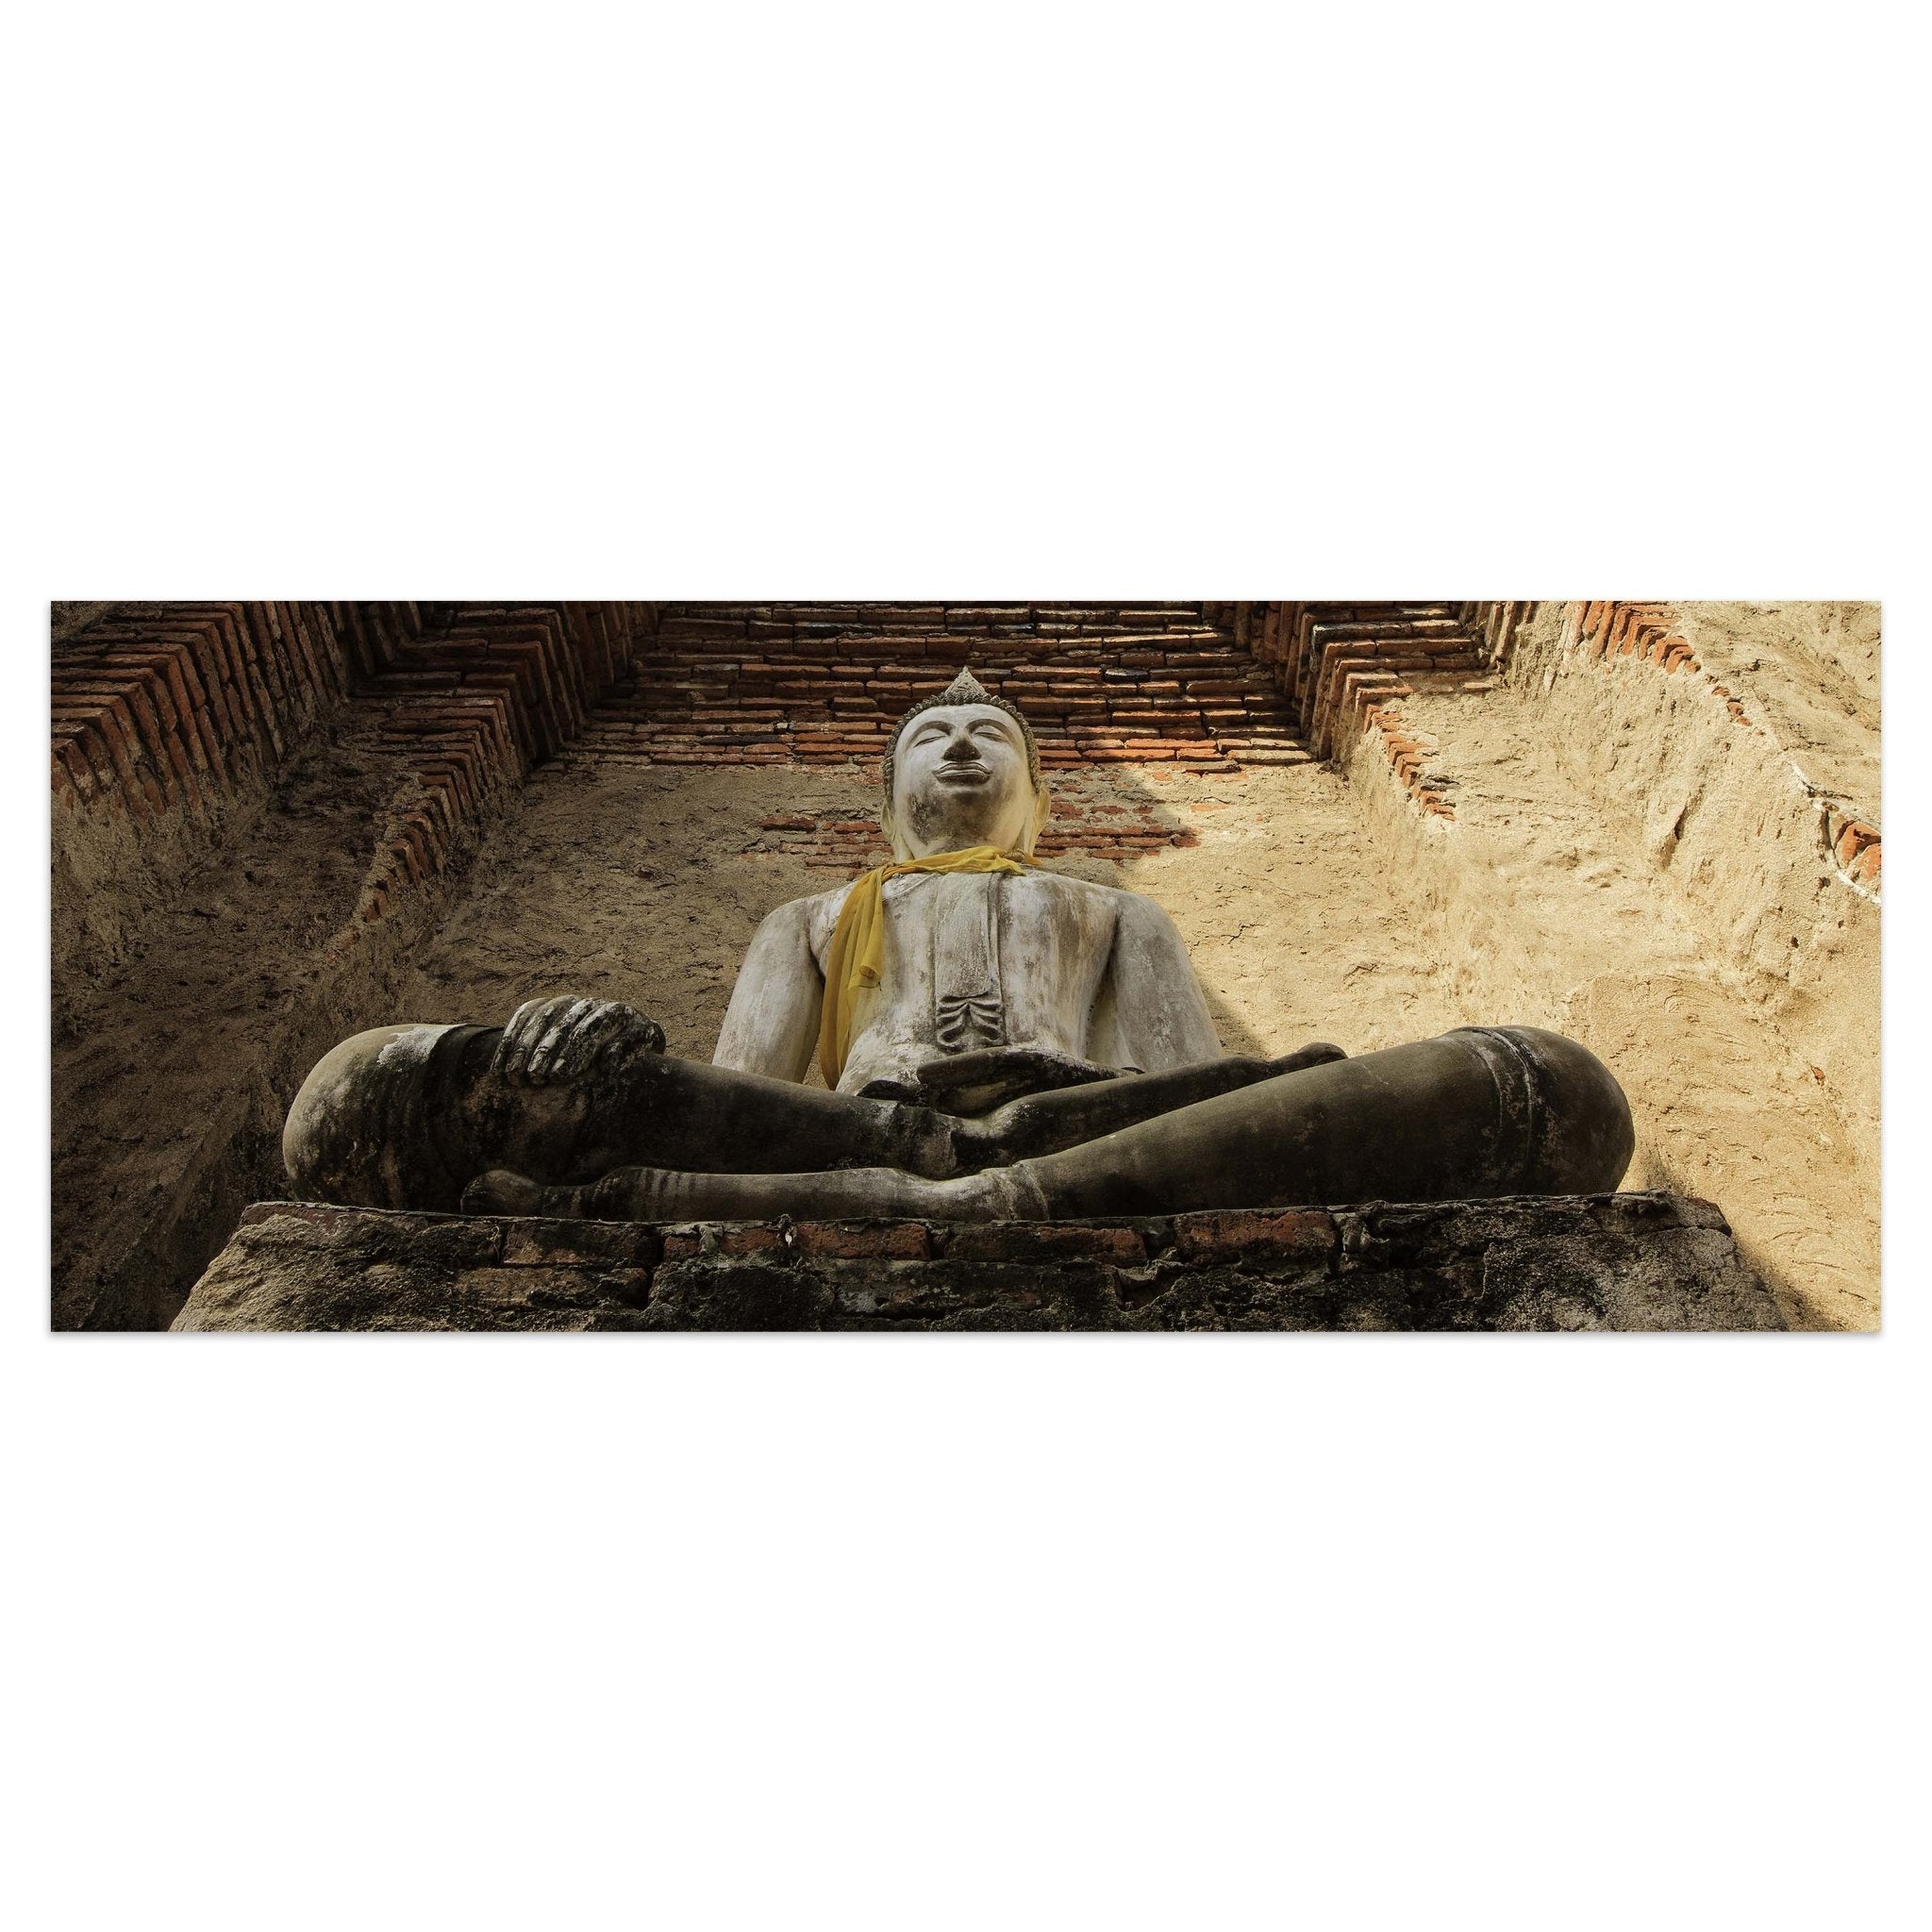 Leinwandbild Eine große Buddha-Statue M0957 kaufen - Bild 1